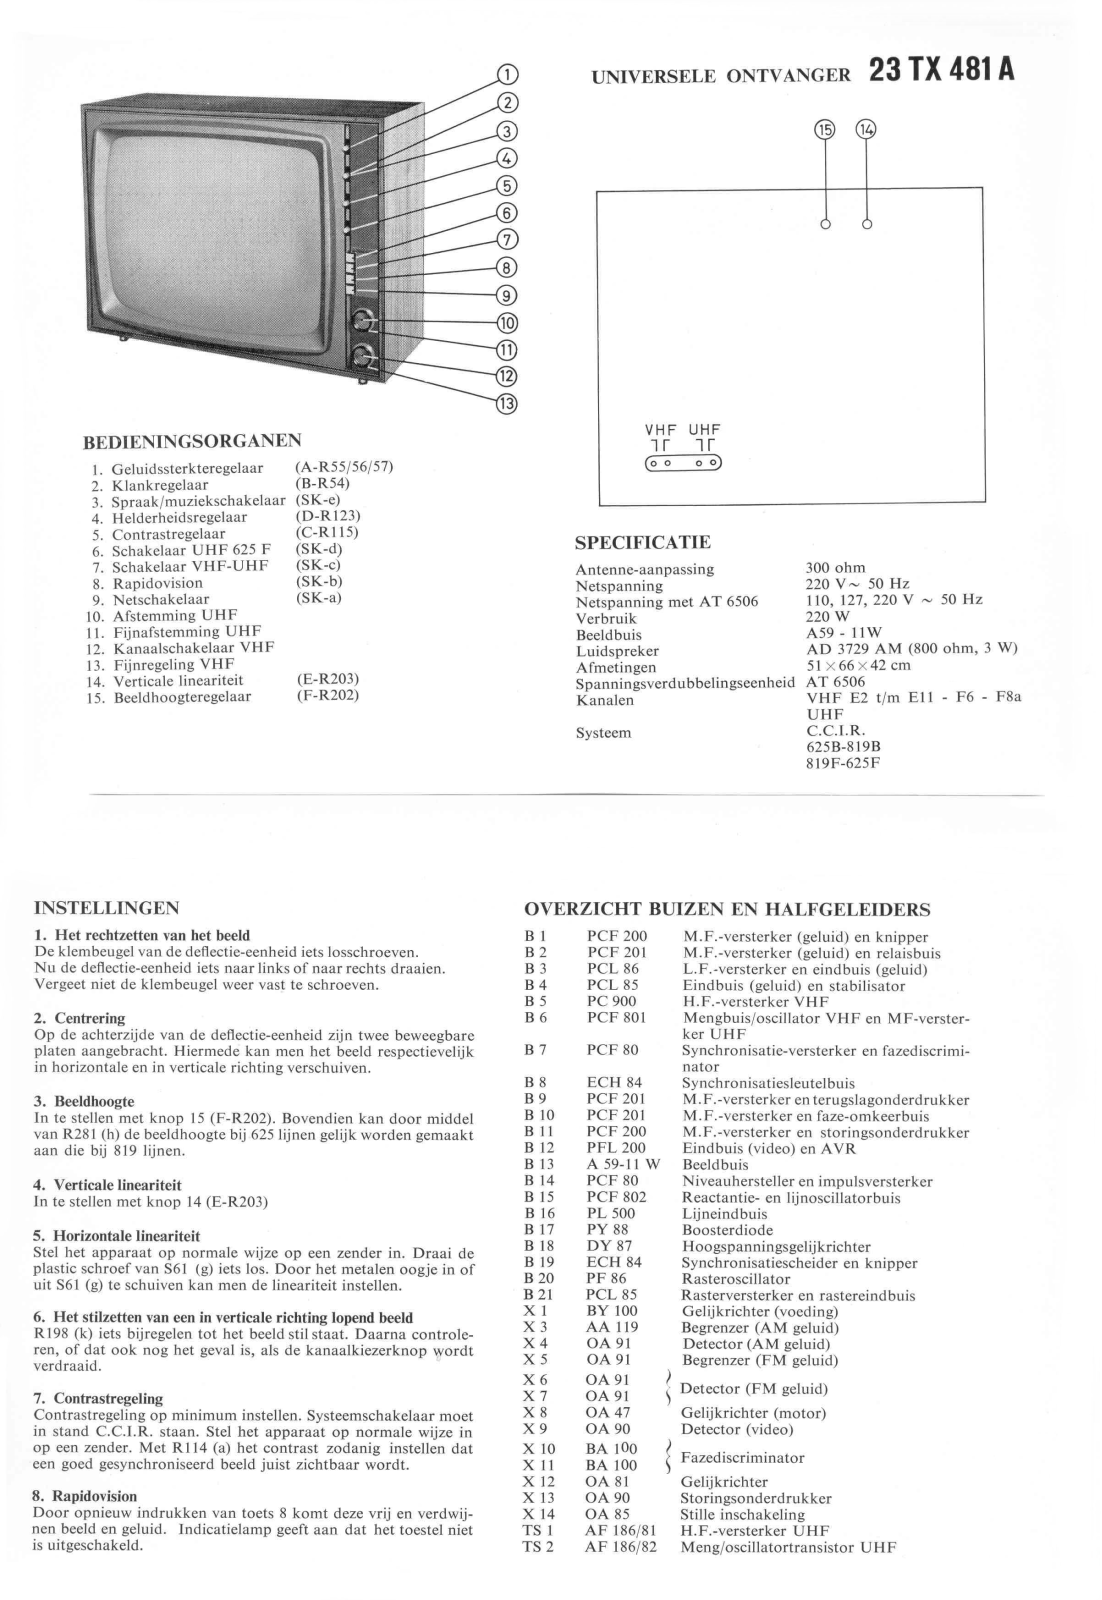 Philips 23TX481A Schematic